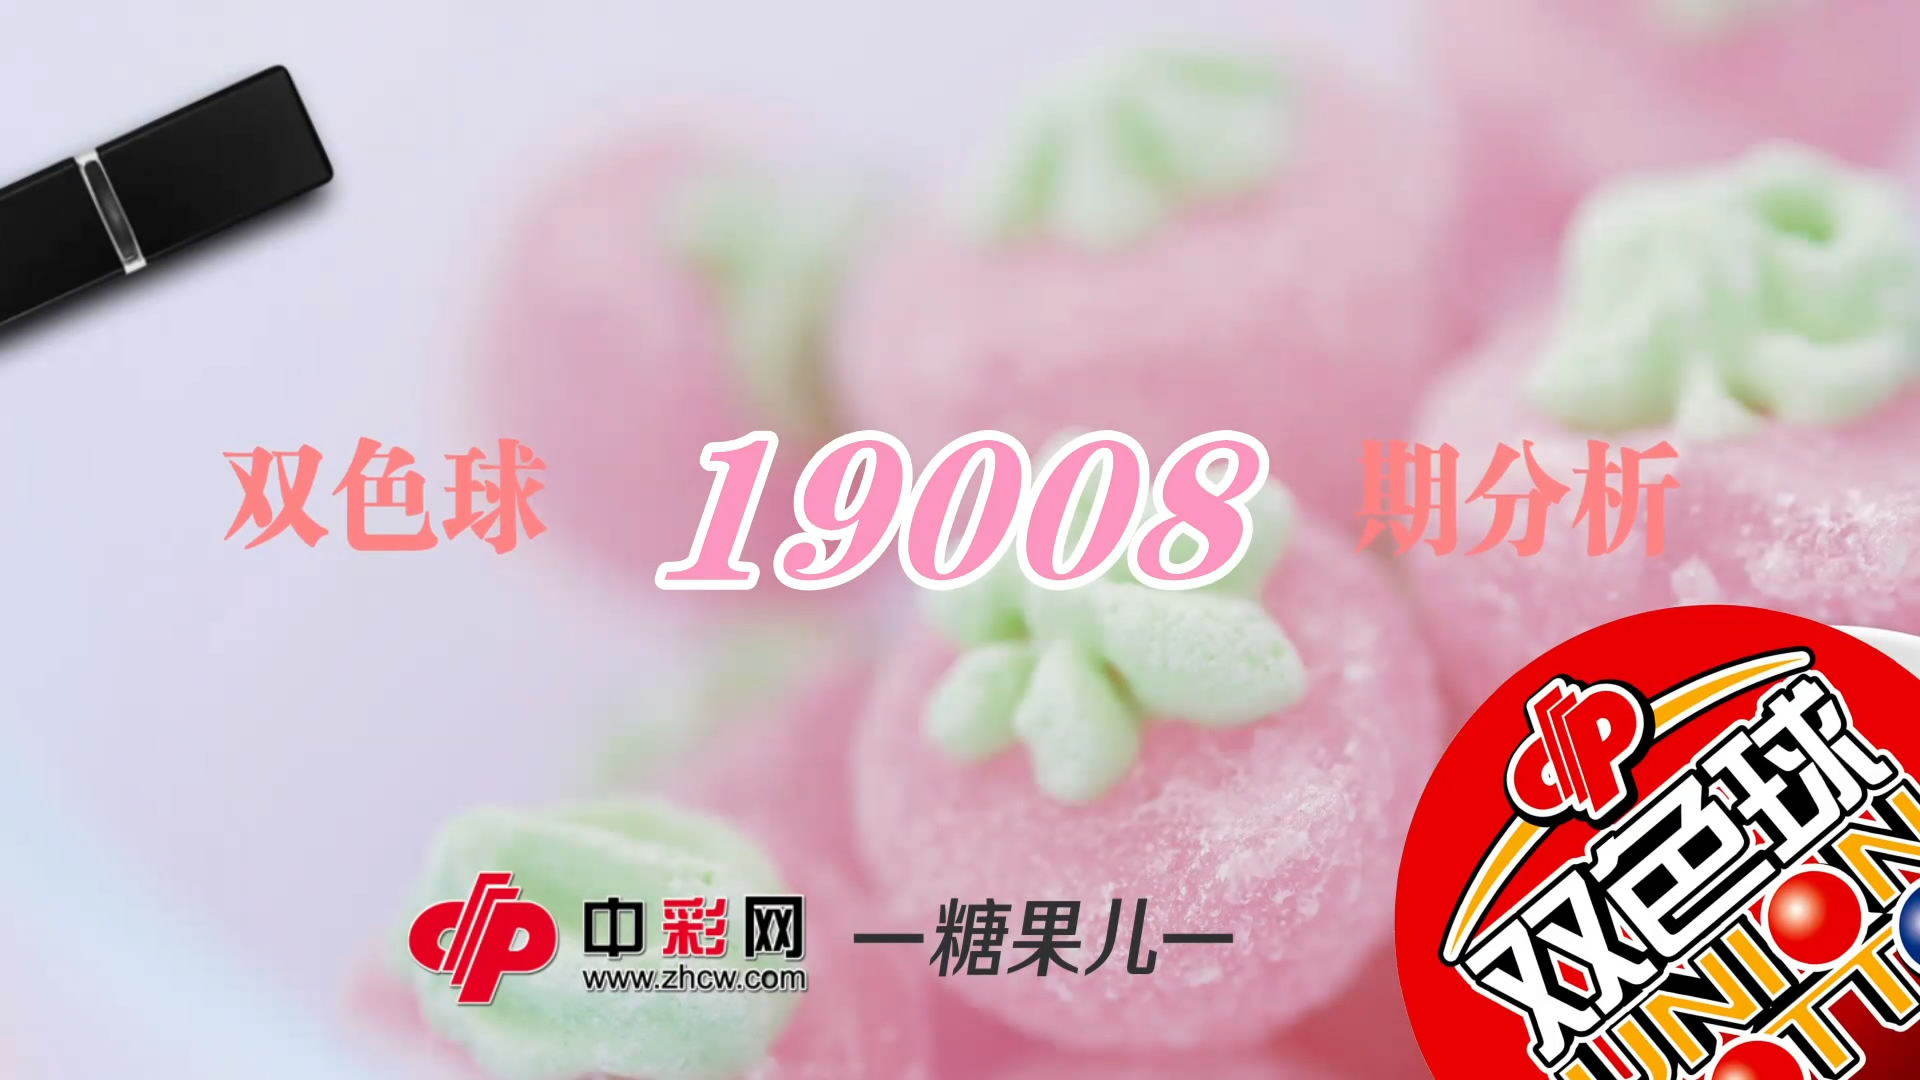 【中彩视频】糖果儿双色球第19008期